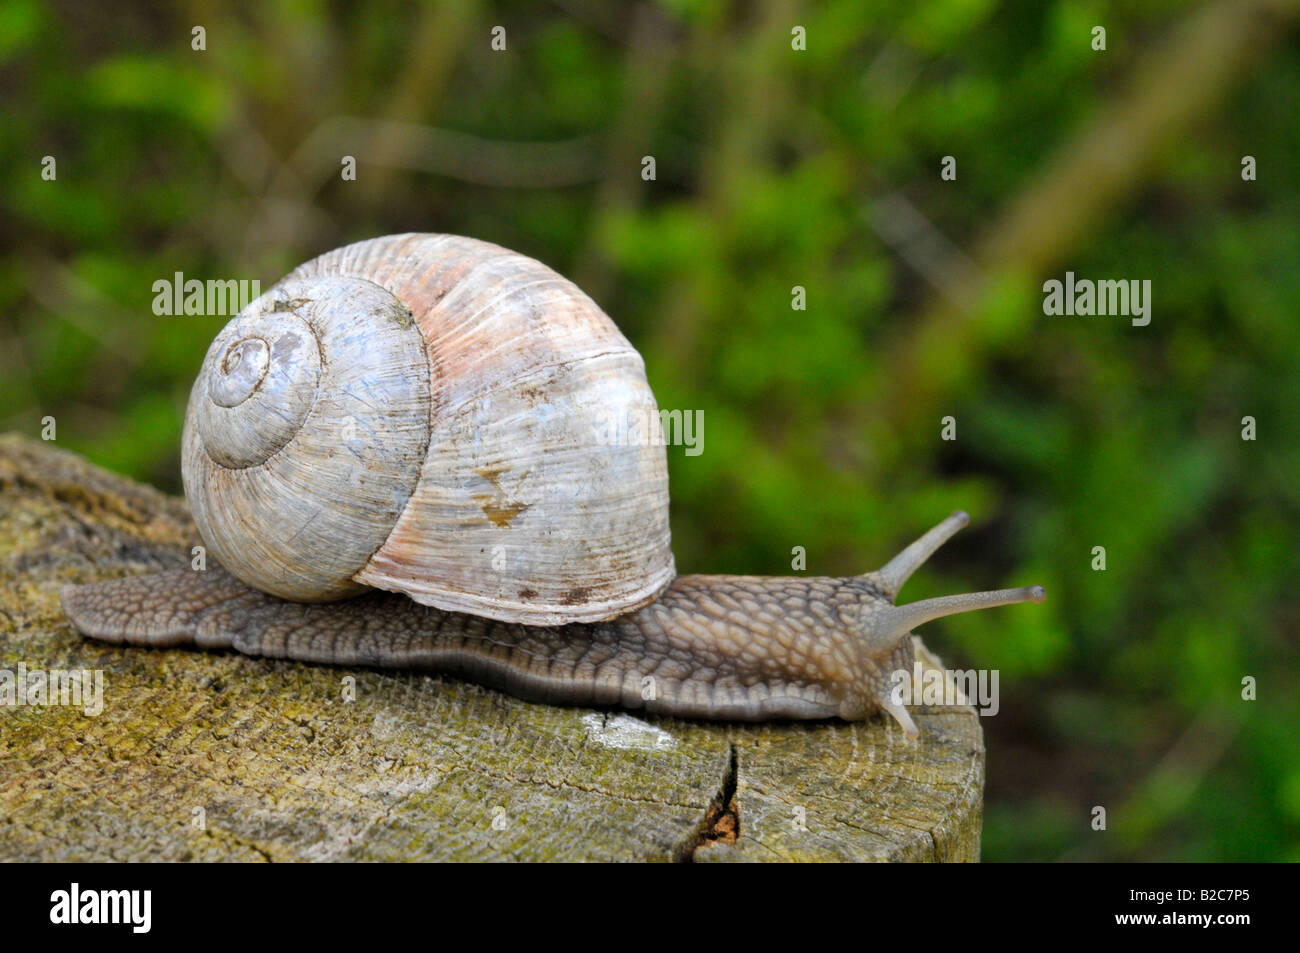 Burgundy Snail, Roman Snail (Helix pomatia) Stock Photo